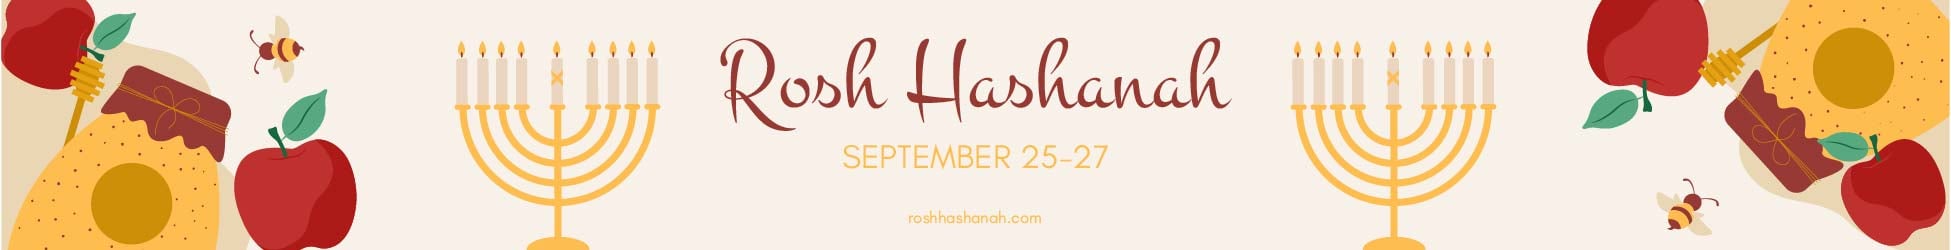 Rosh Hashanah Website Banner in Illustrator, PSD, EPS, SVG, JPG, PNG